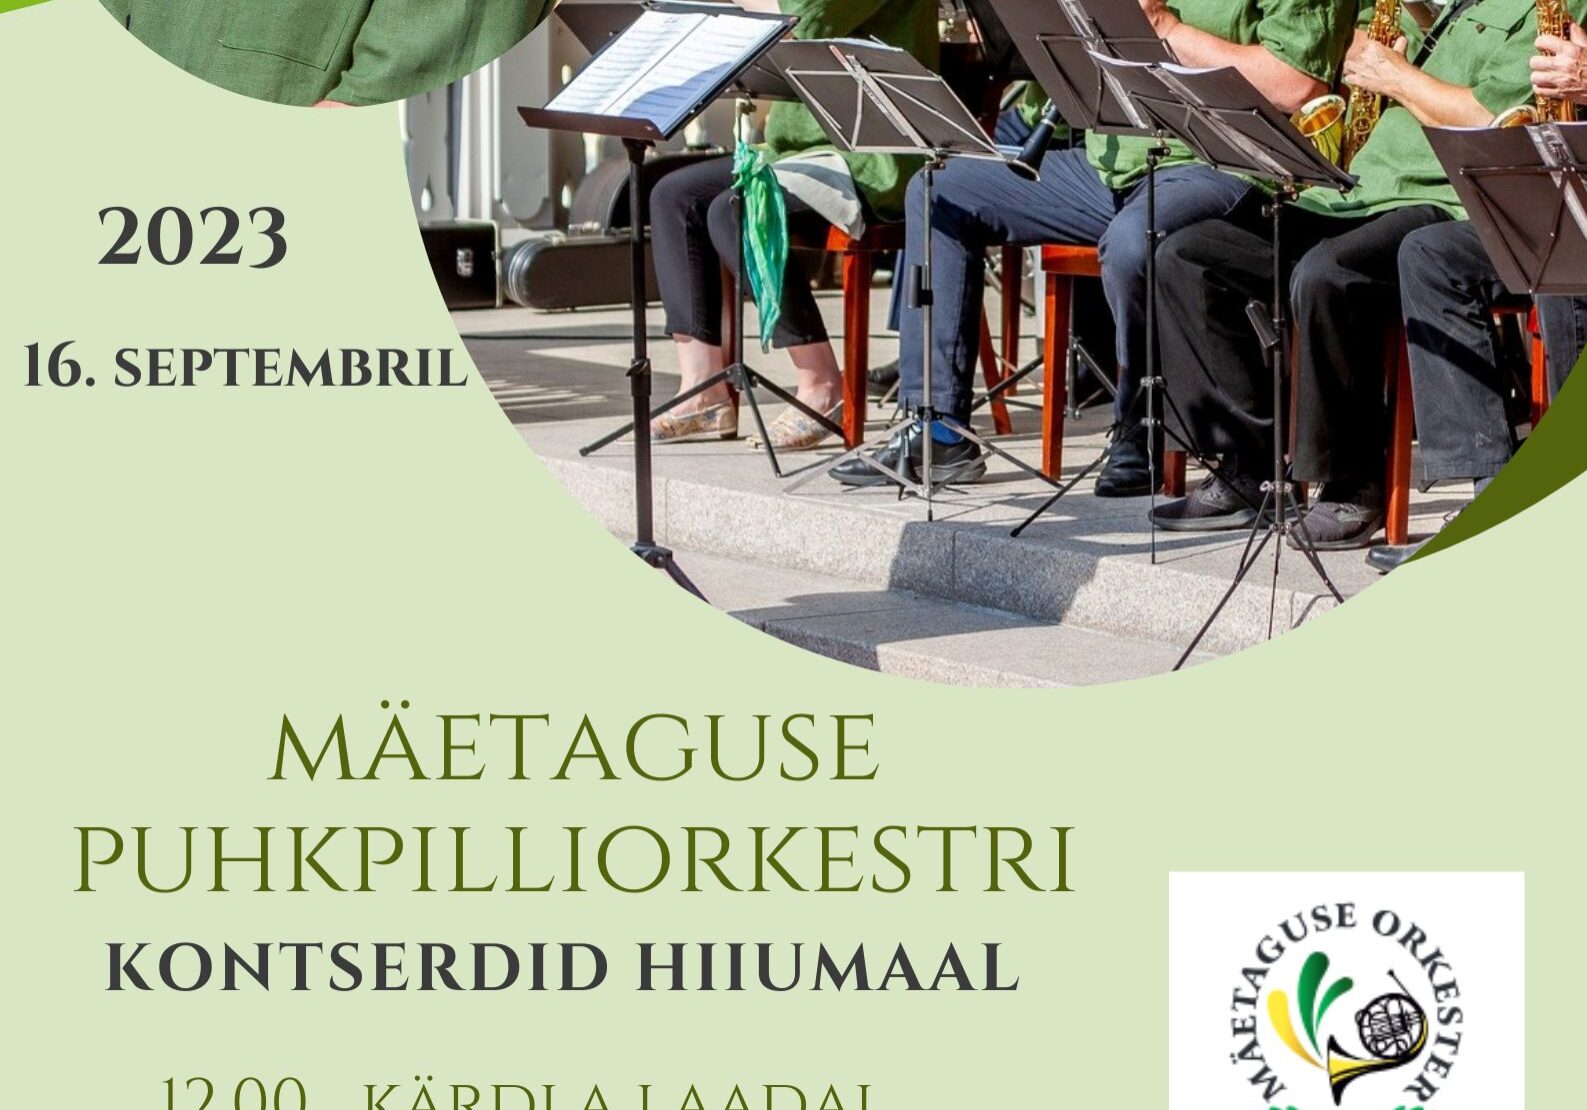 Orkestri plakat 2 kontserti Hiiumaal